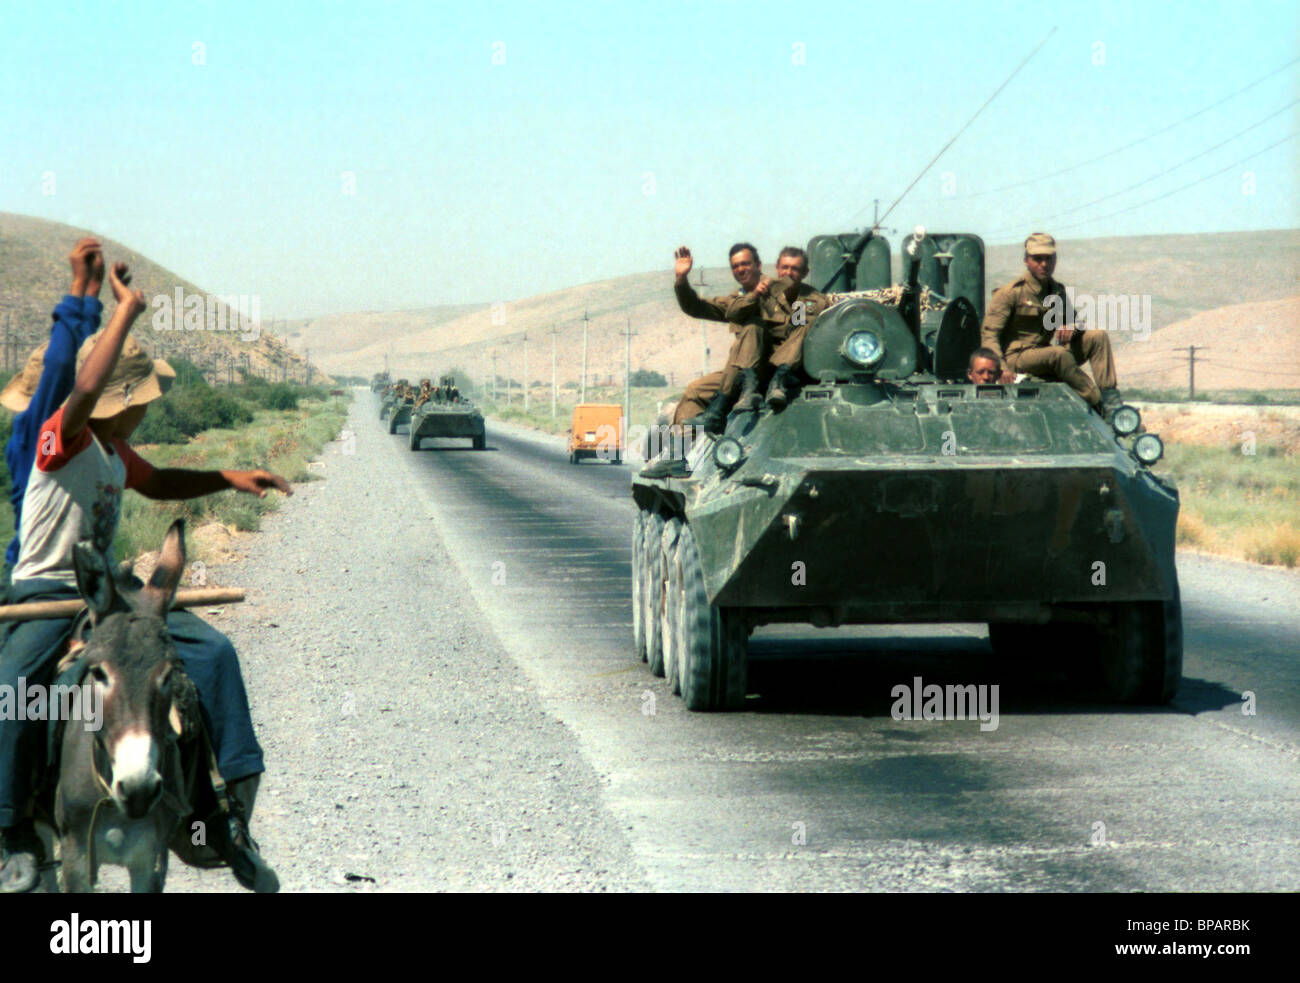 Soviet Afghanistan war - Page 6 Withdrawal-of-soviet-troops-from-afghanistan-BPARBK